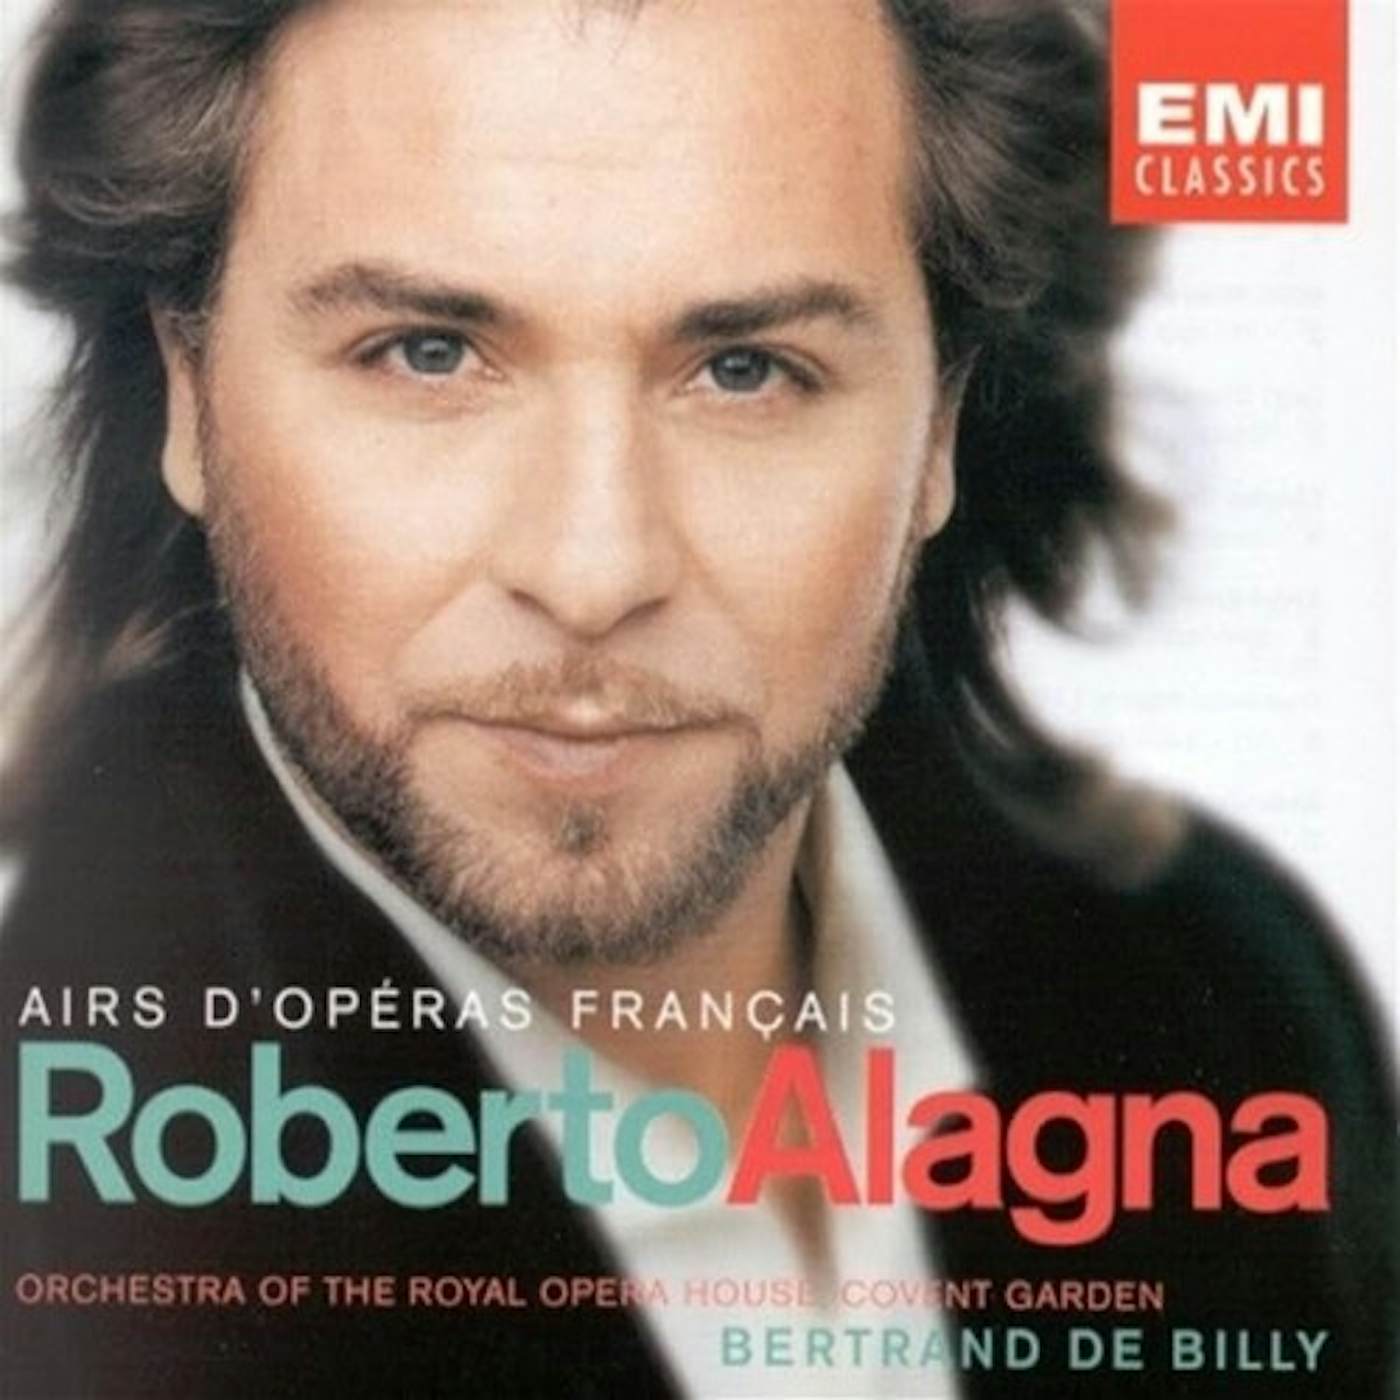 Roberto Alagna AIRS D'OPERA FRANCAIS CD